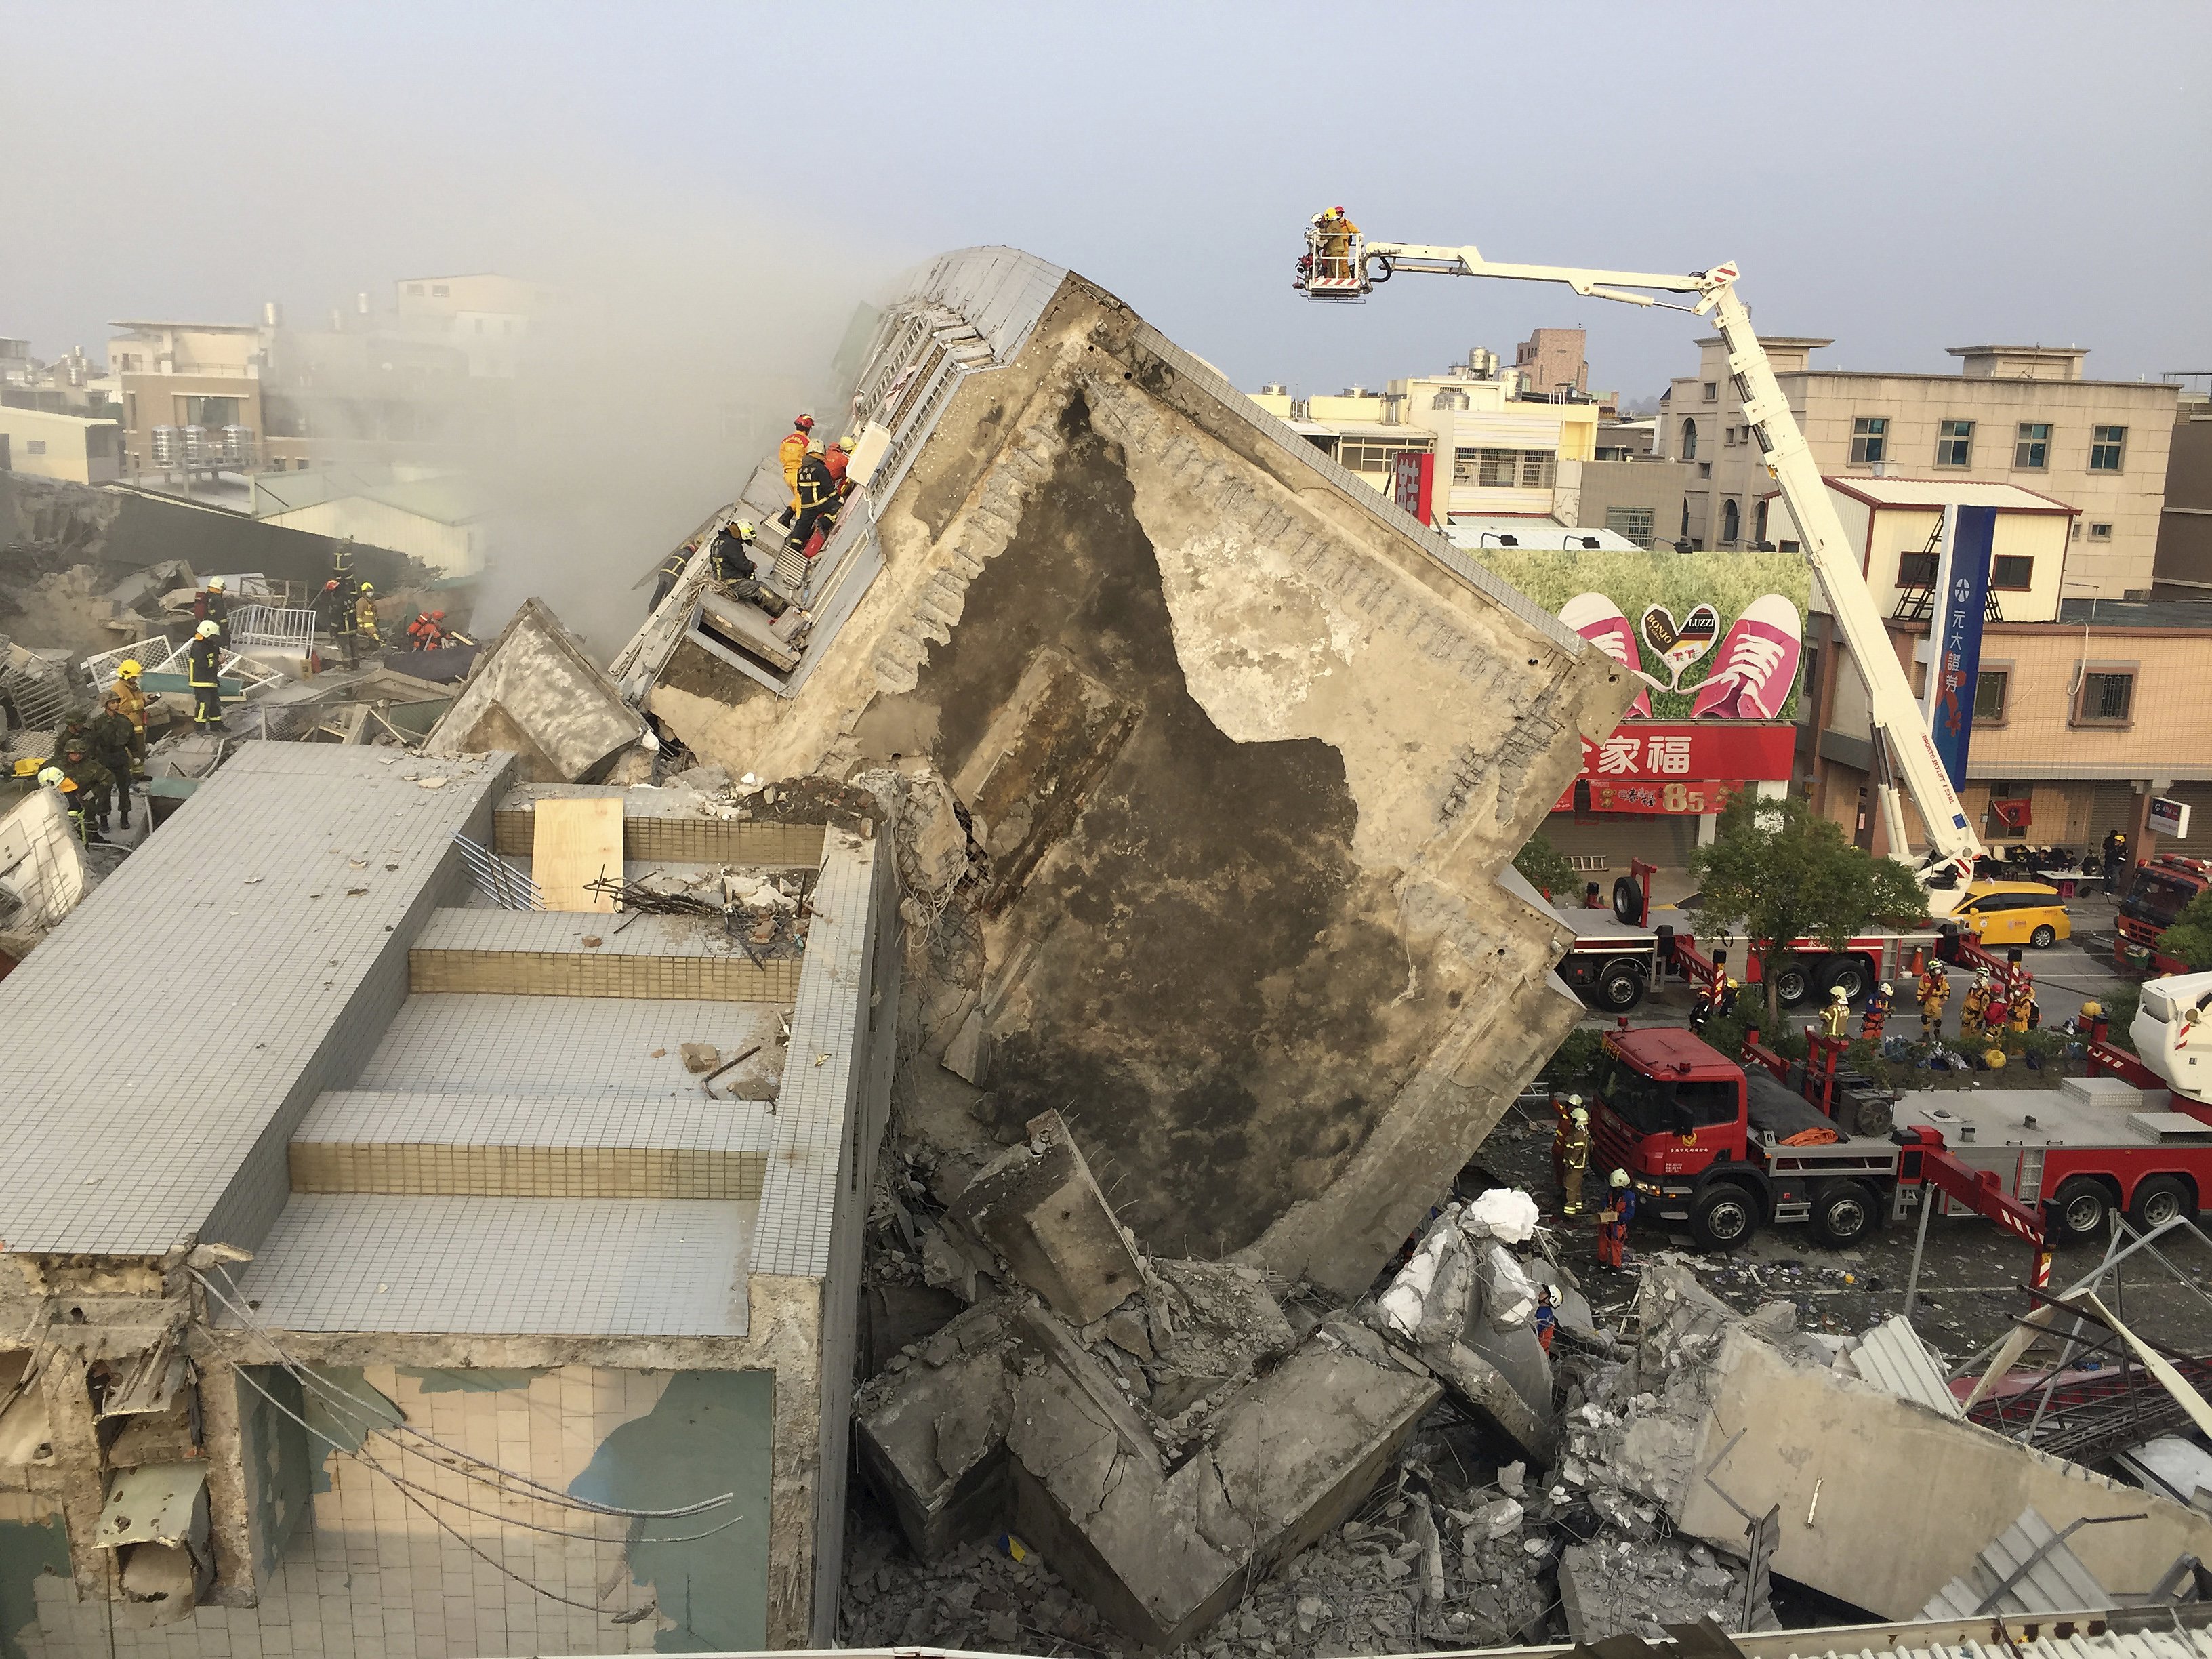 Death Toll in Taiwan Quake Rises to 113 - NBC News